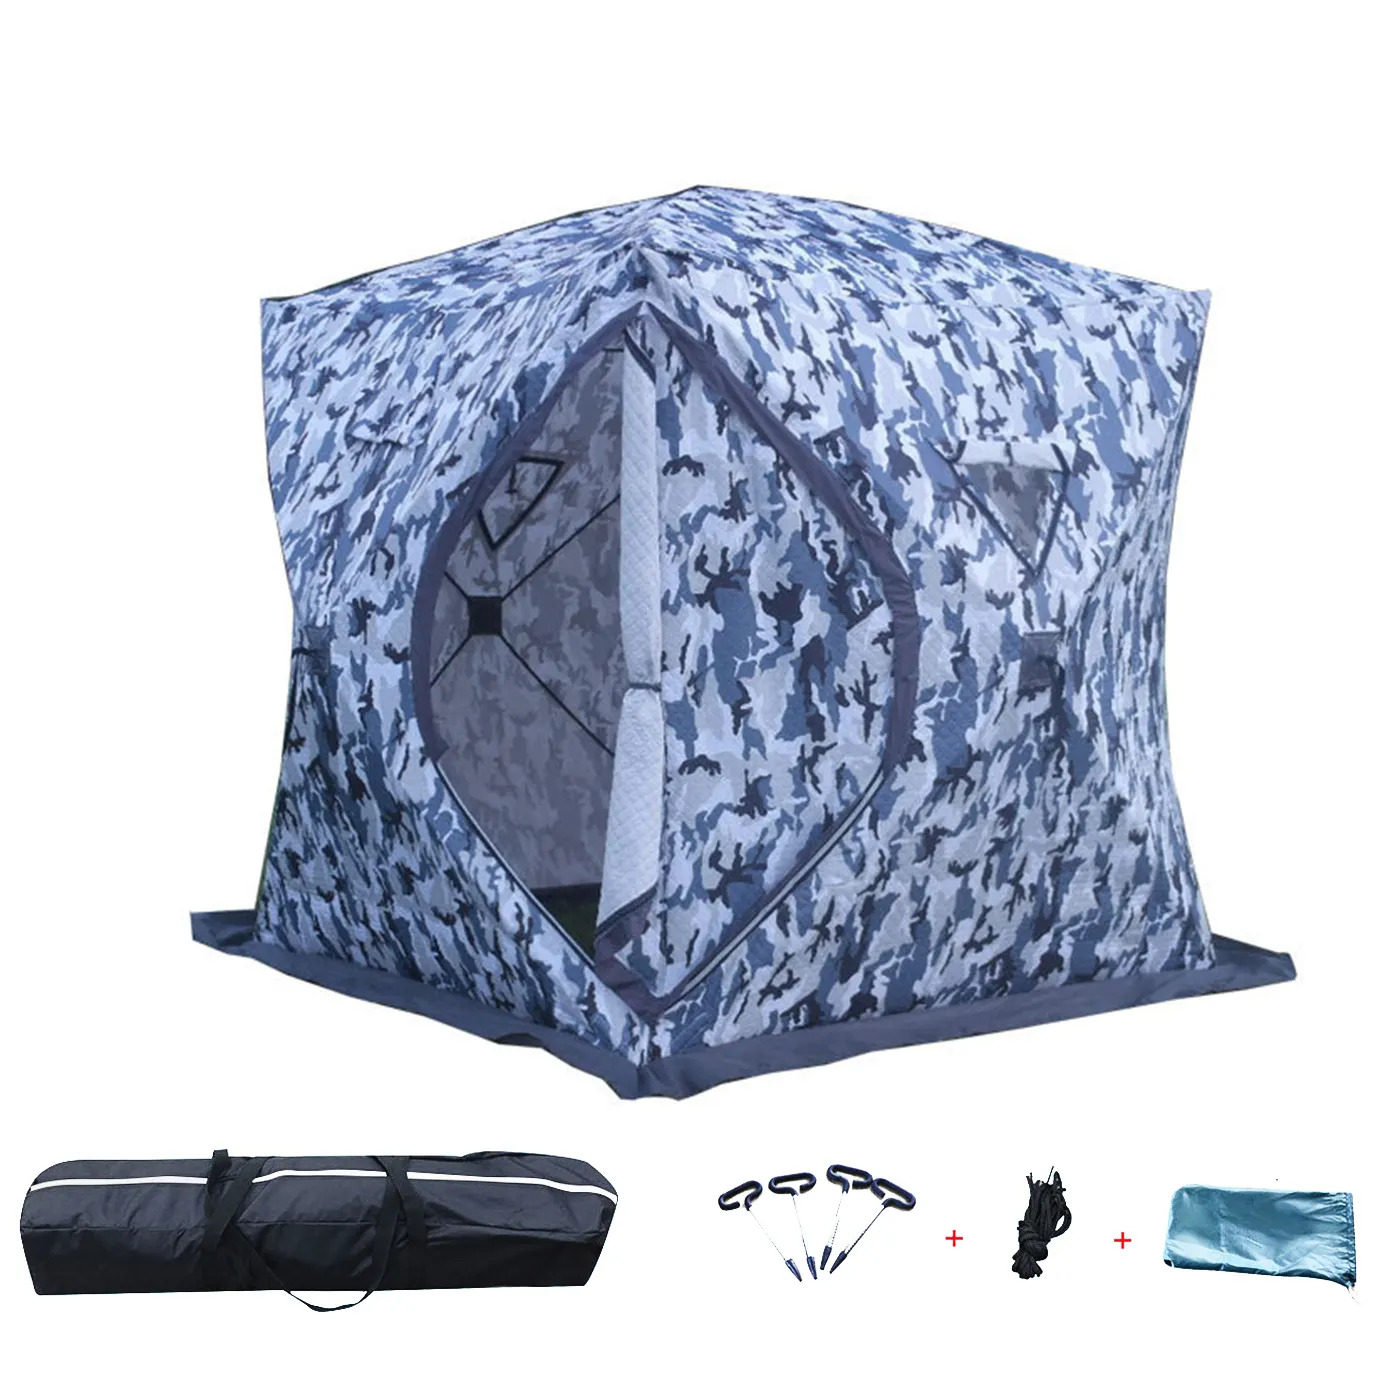 Refugio de hielo portátil para pesca, tienda de campaña de invierno, cubitos de hielo al aire libre, envío barato